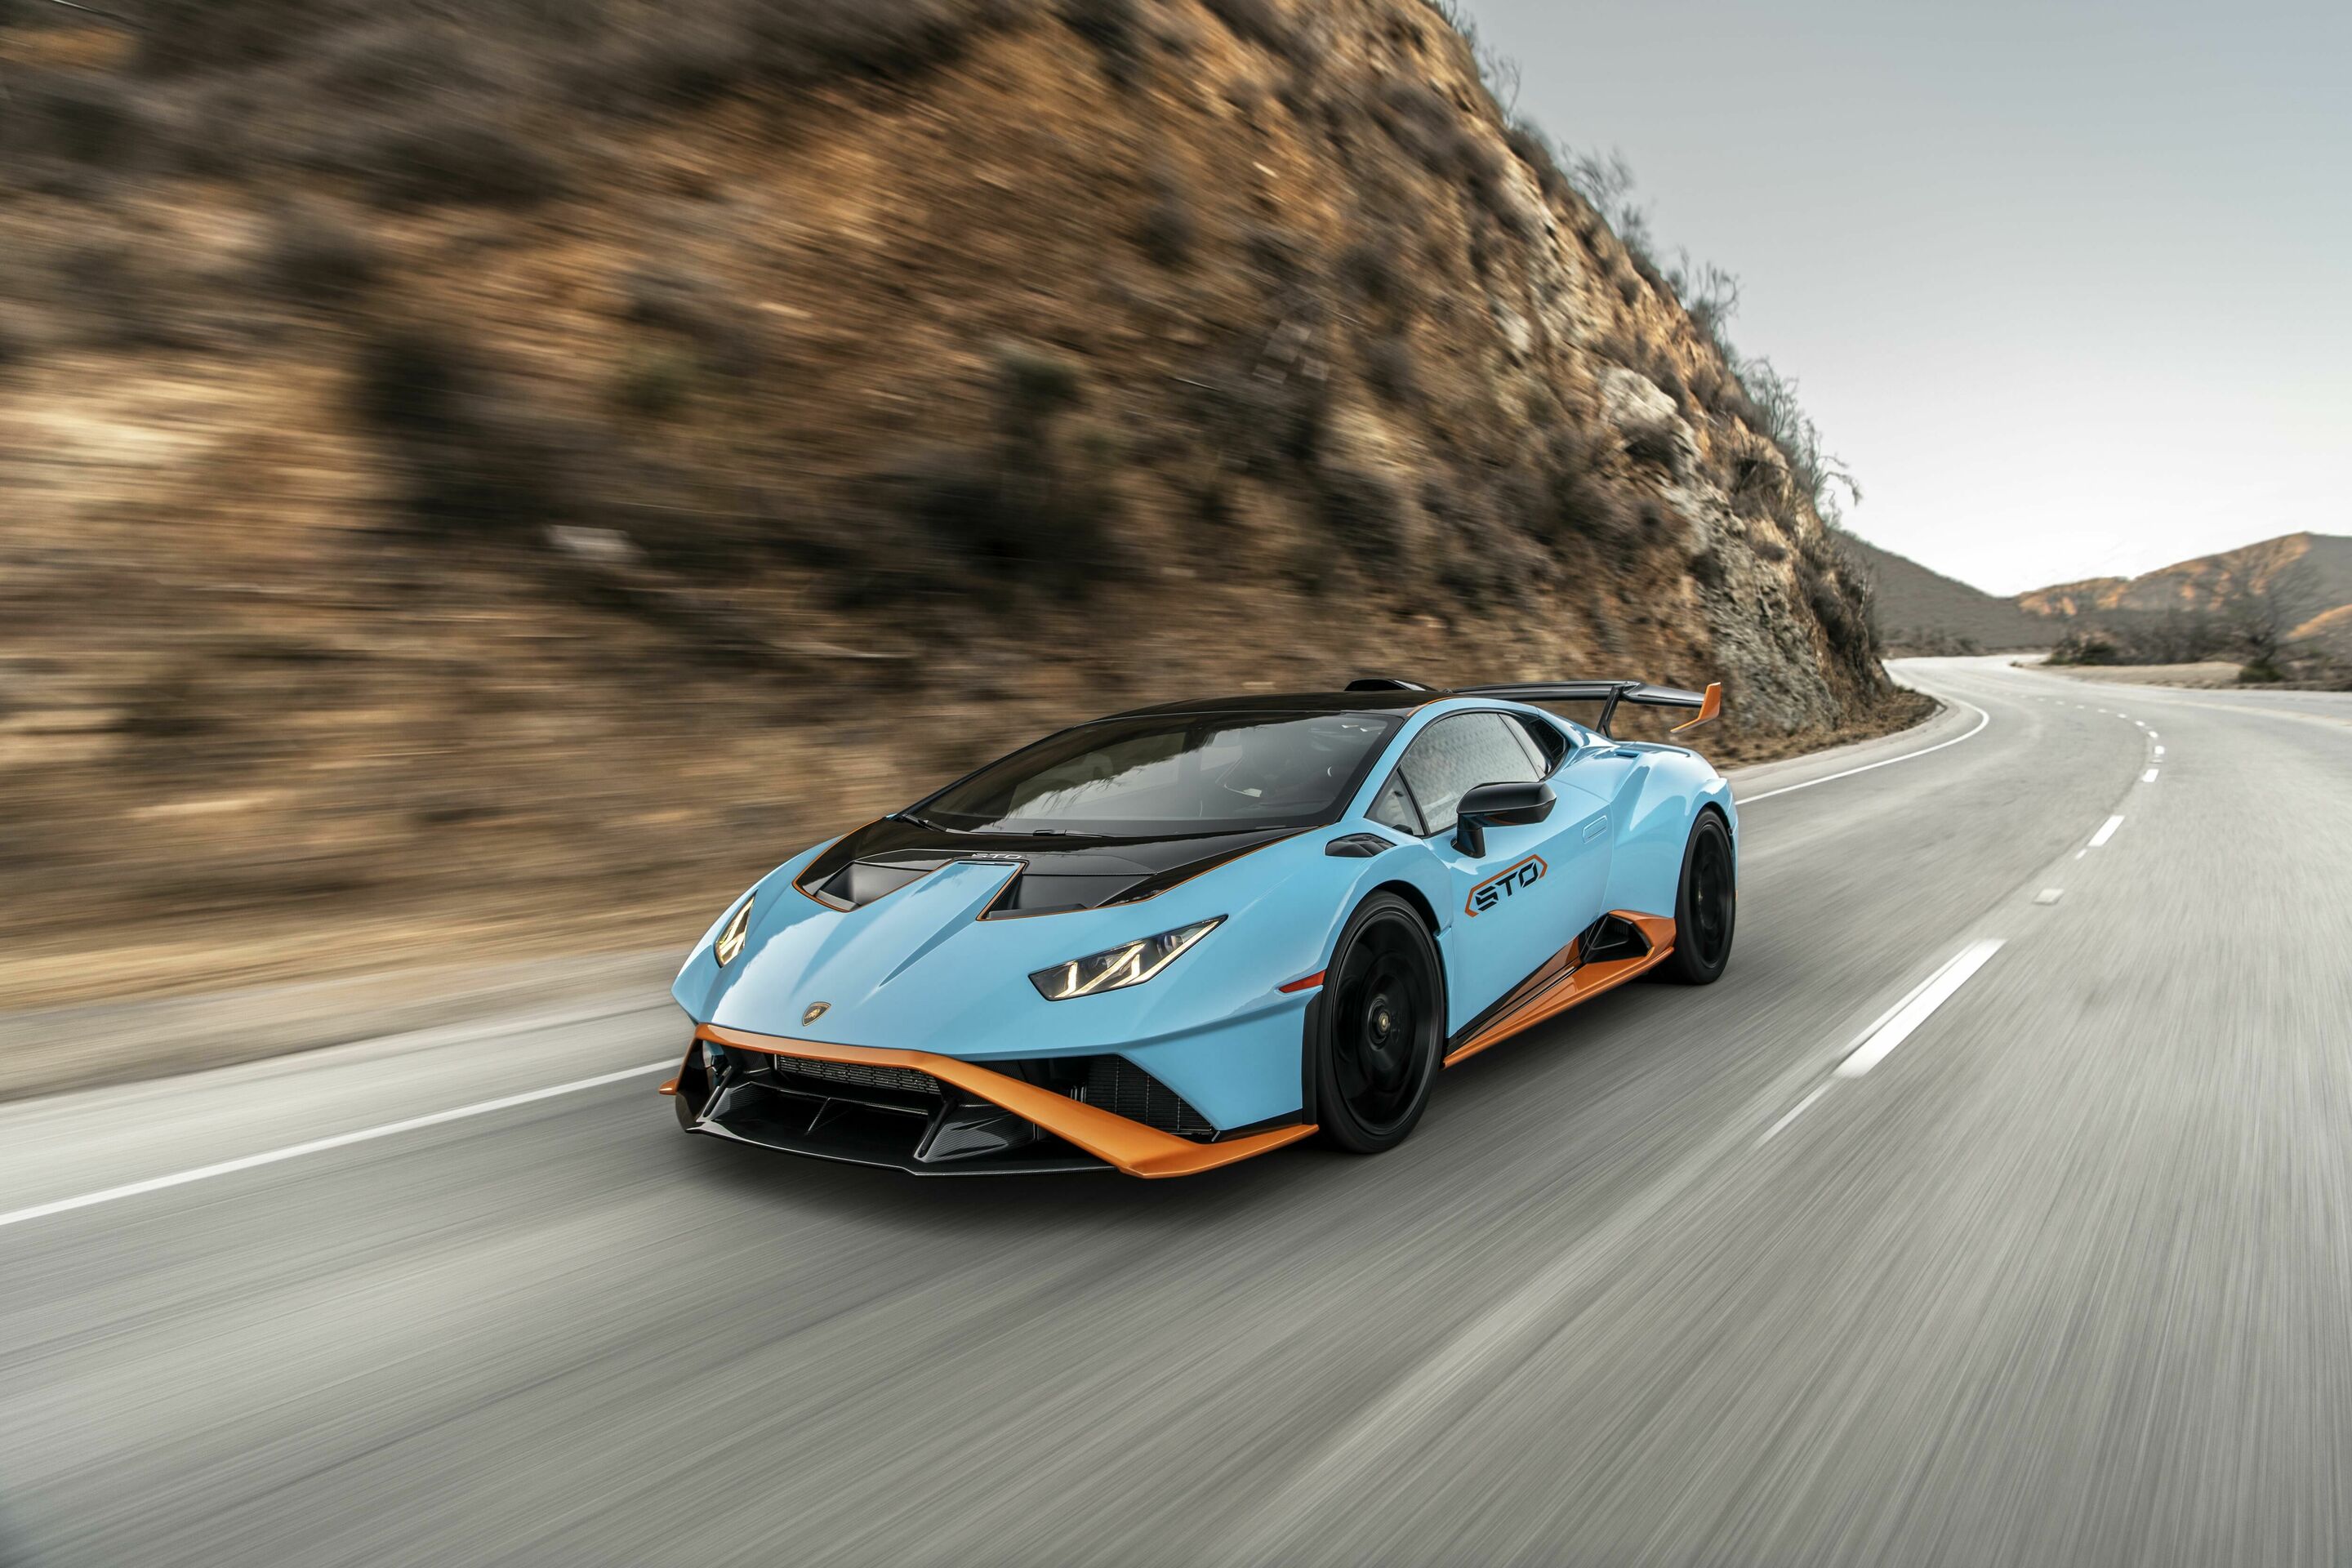 A record-breaking 2021 for Automobili Lamborghini